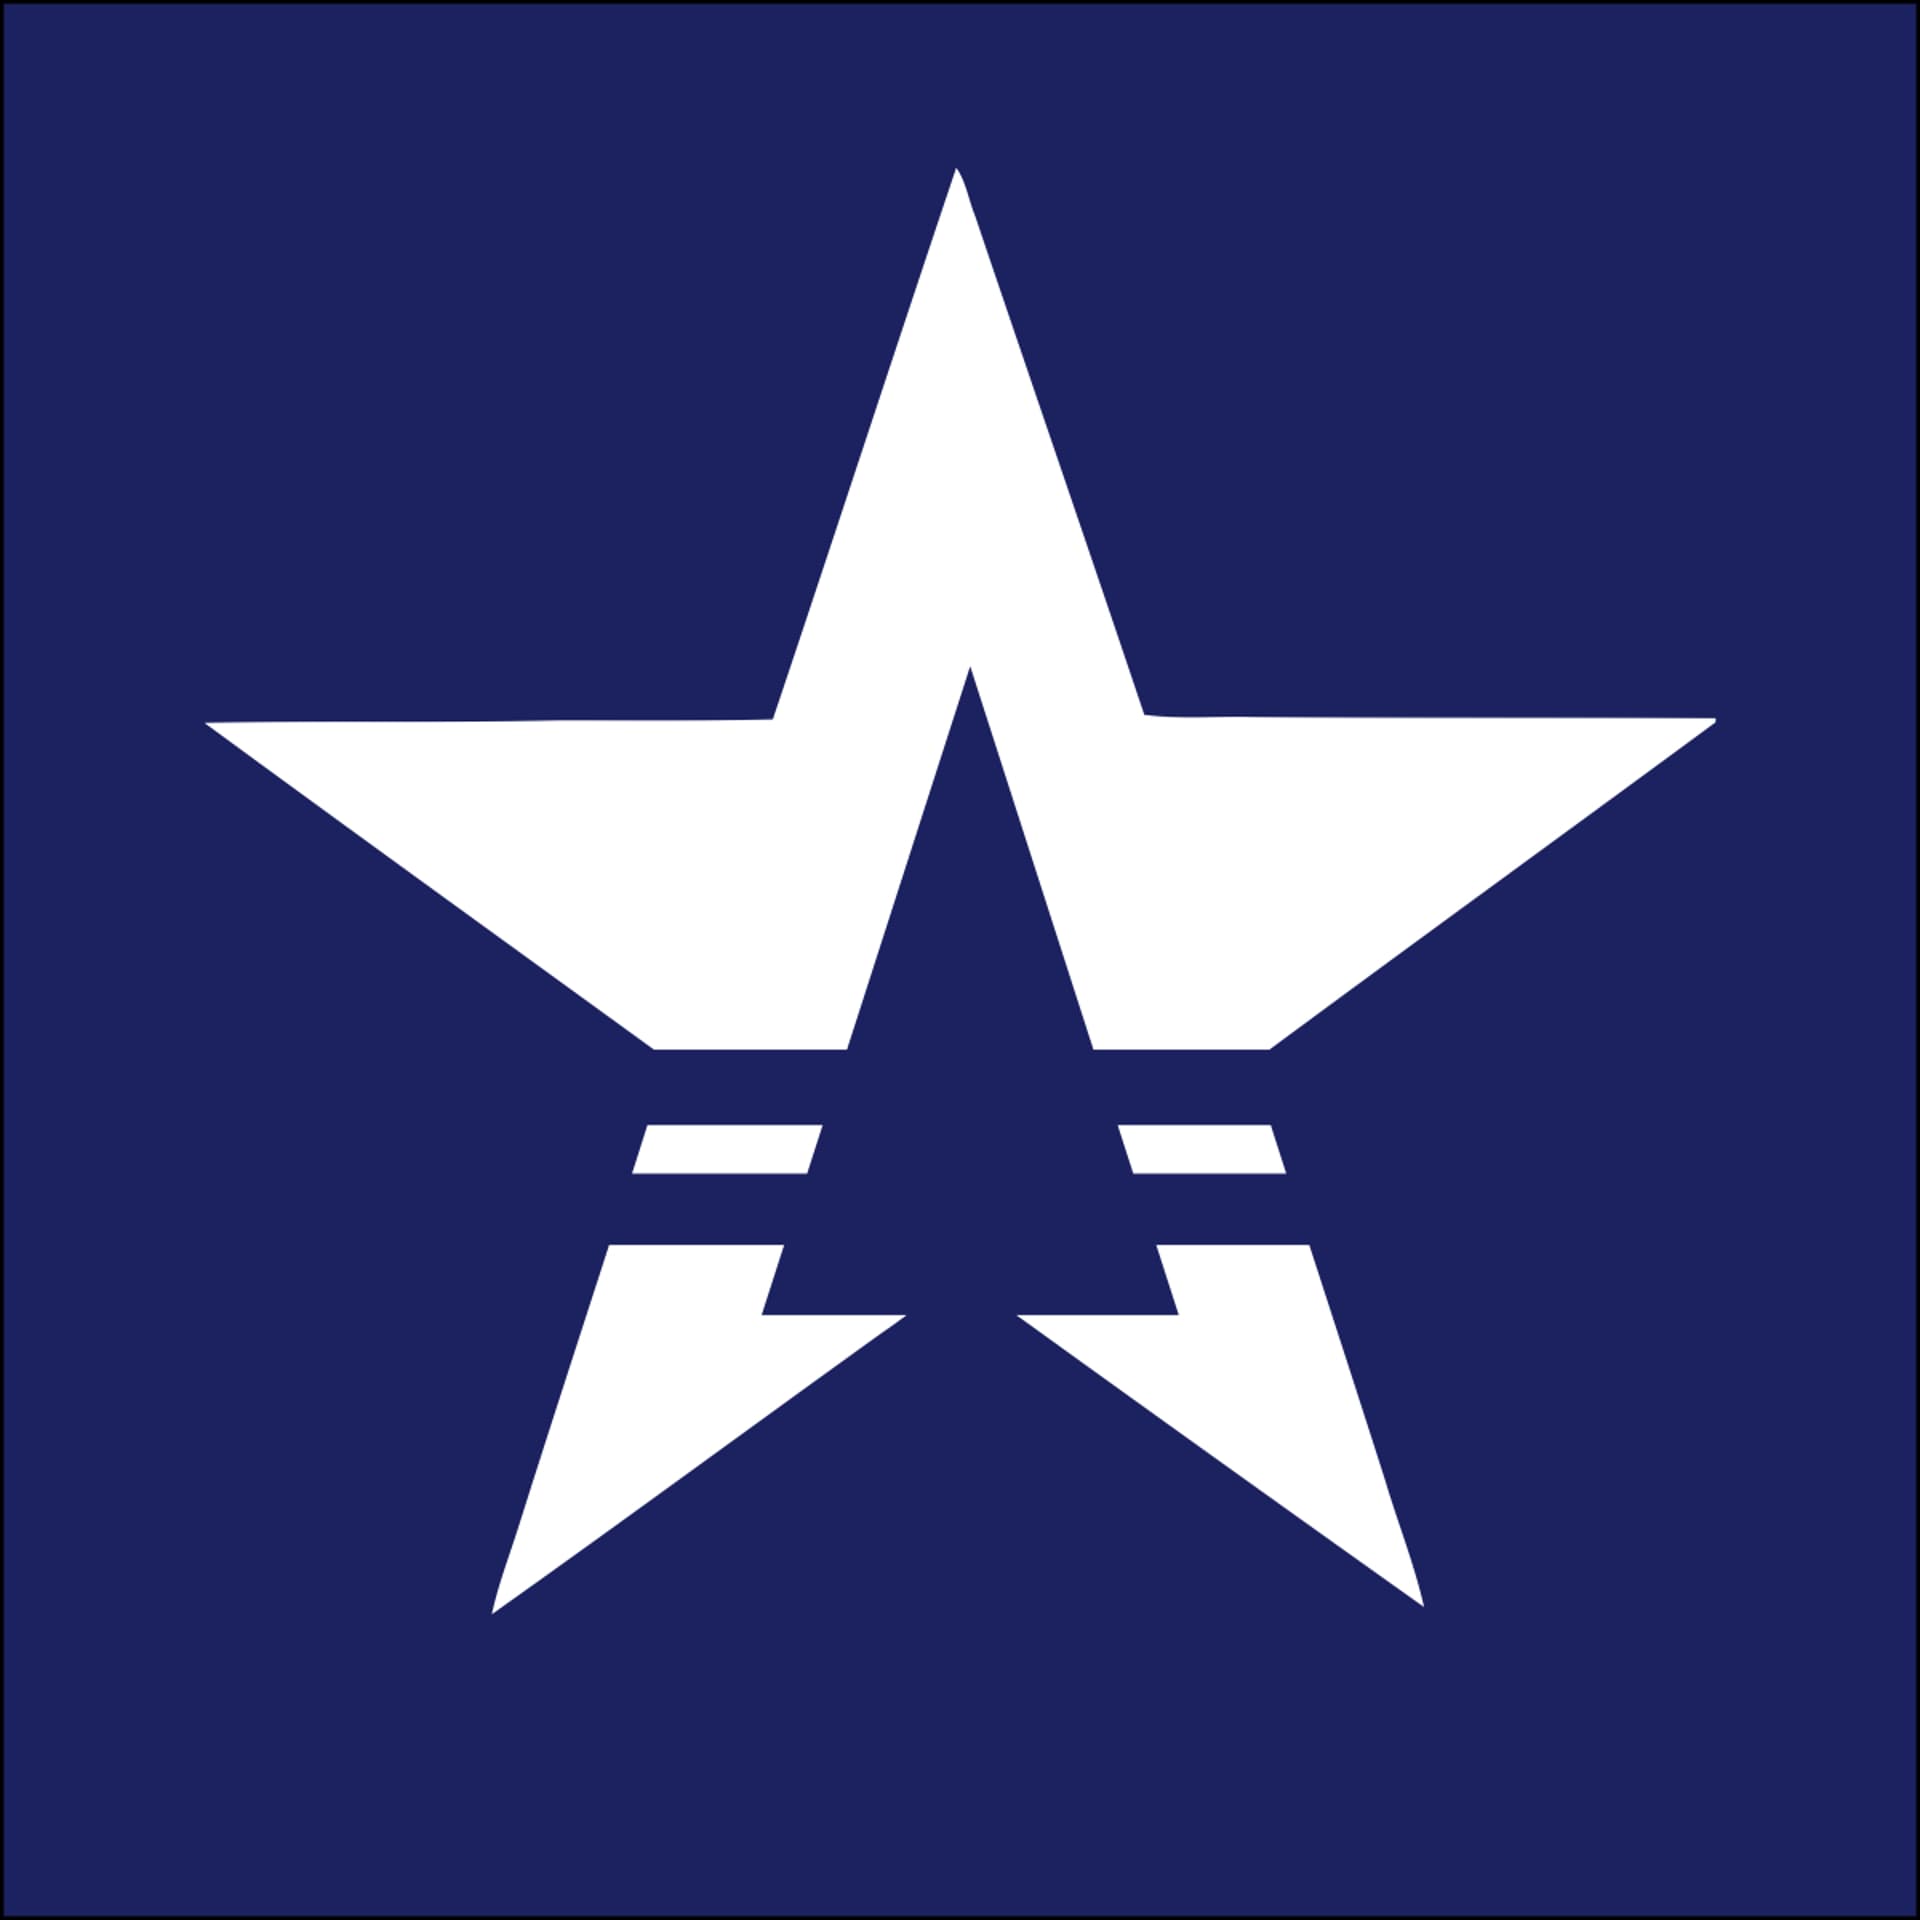 StarApps Studio's logo